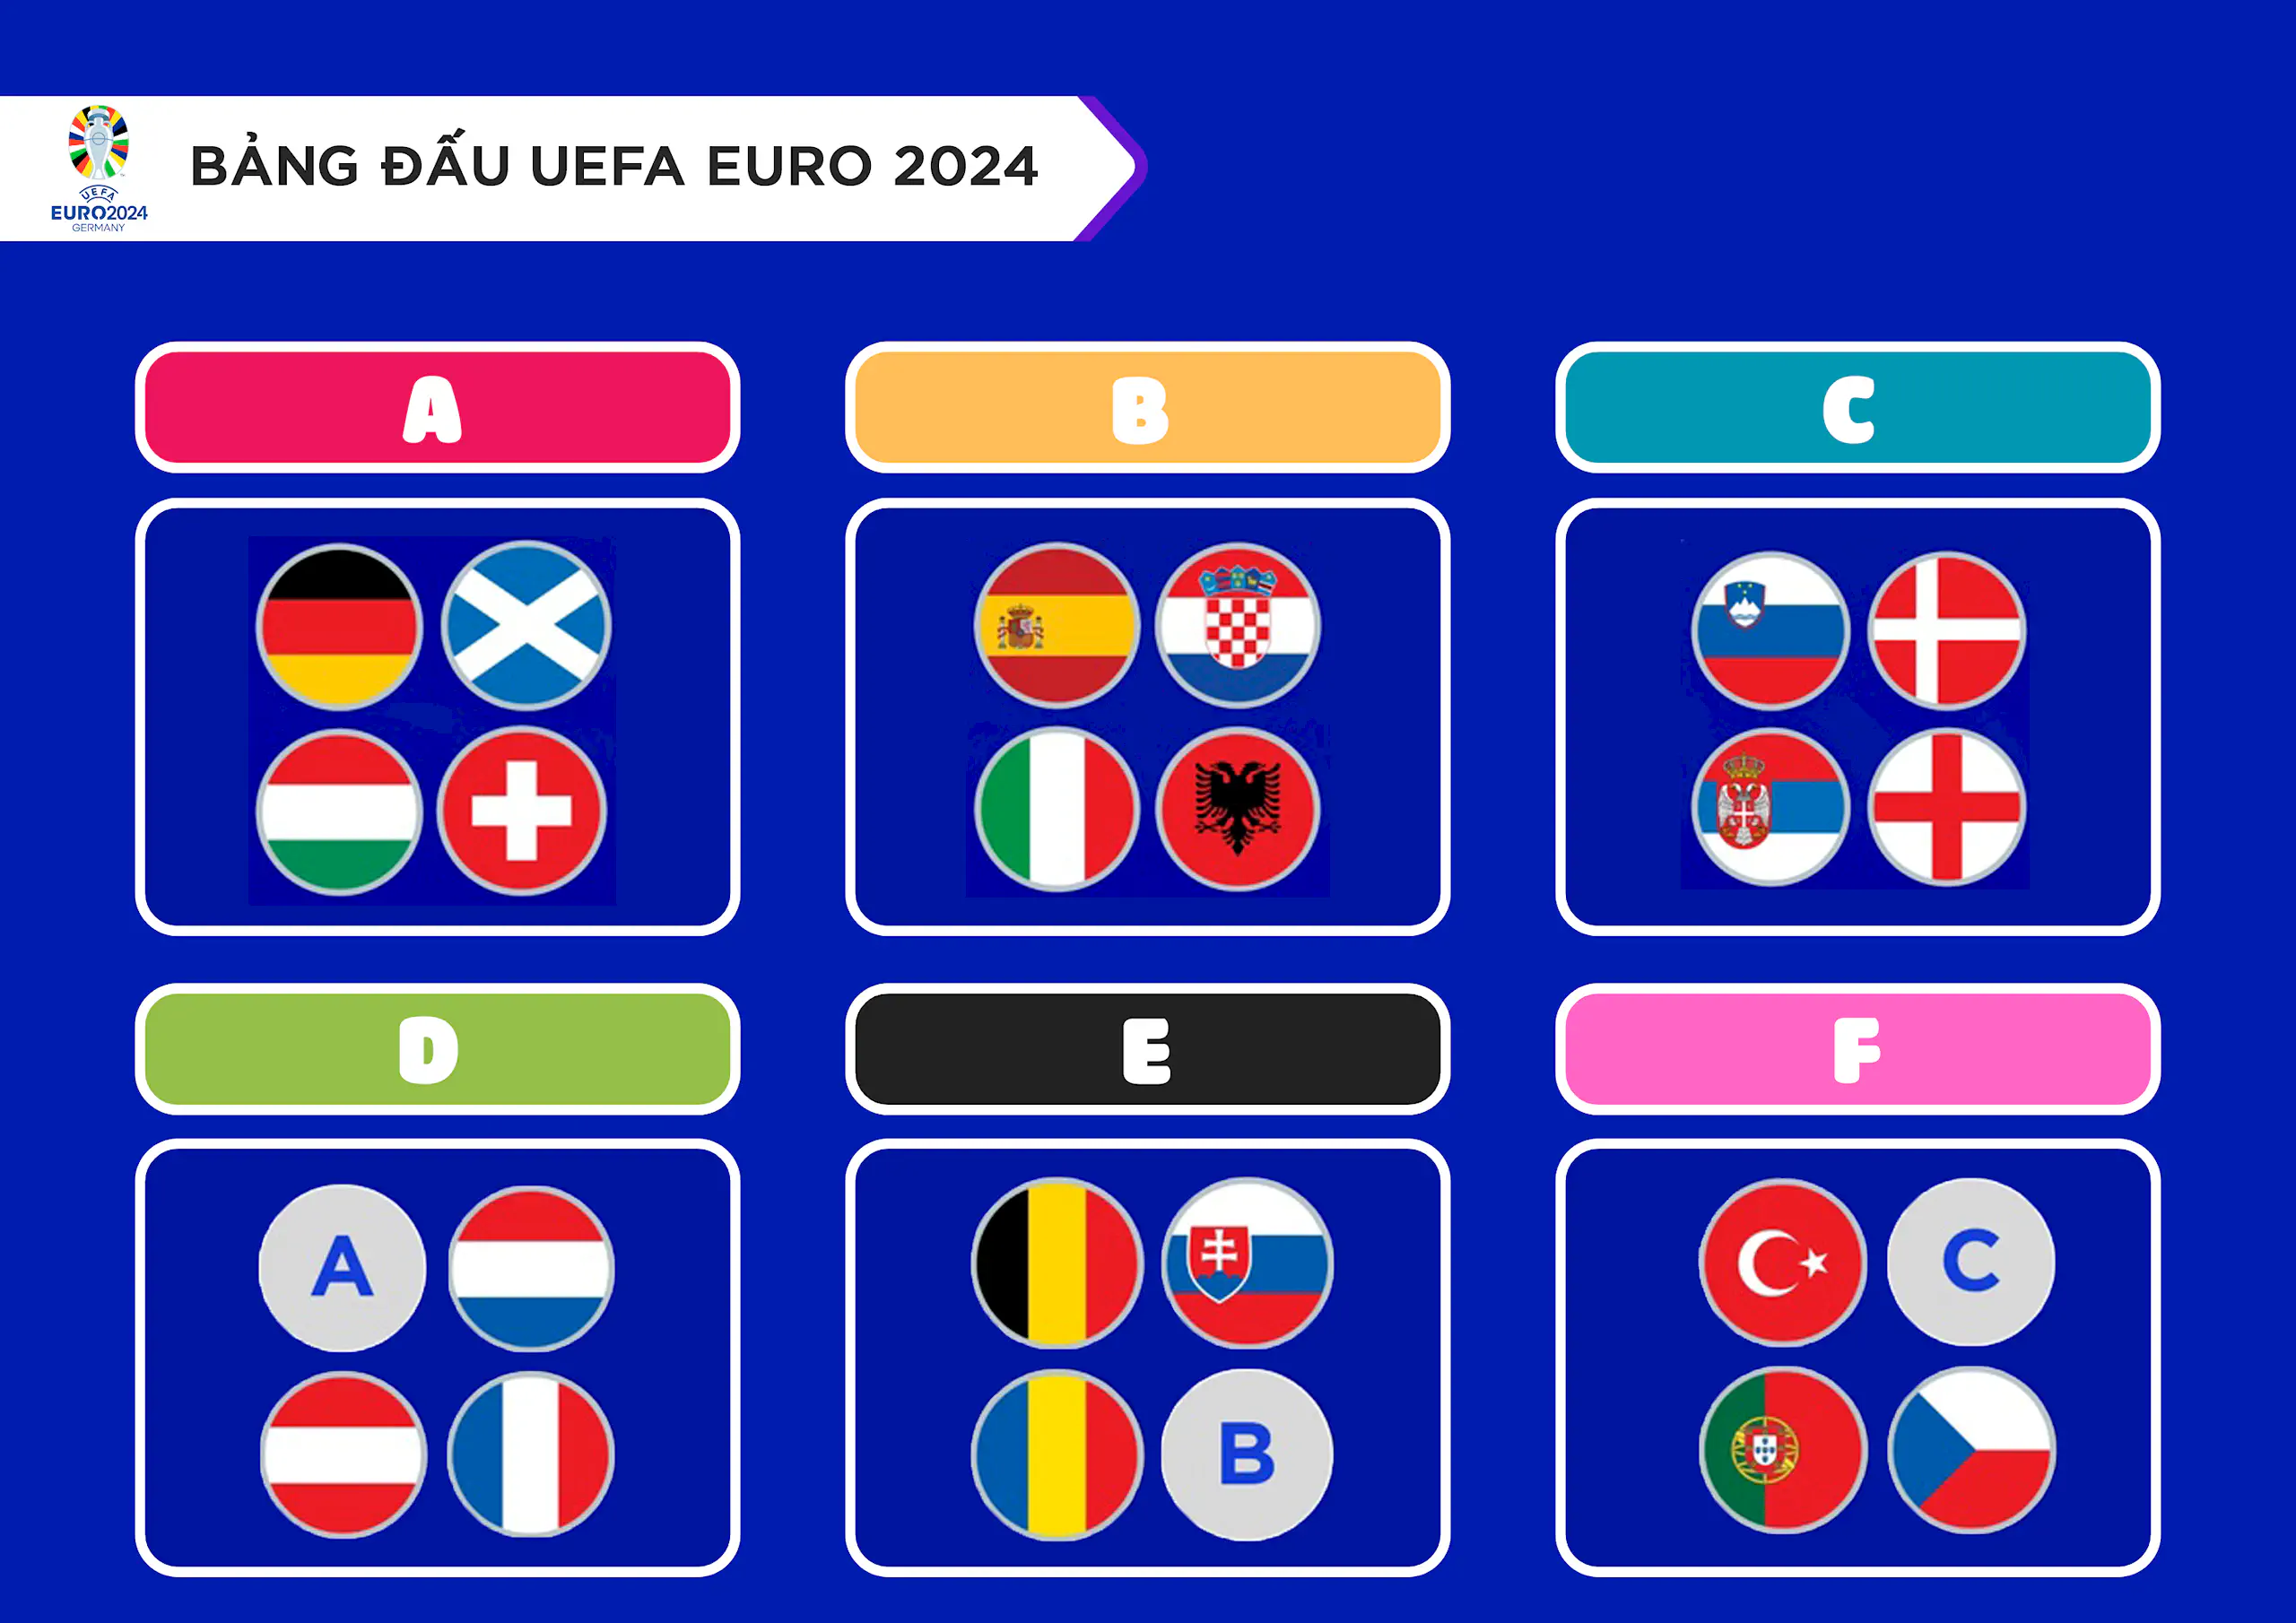 Lịch thi đấu UEFA EURO 2024 ngày 16/06